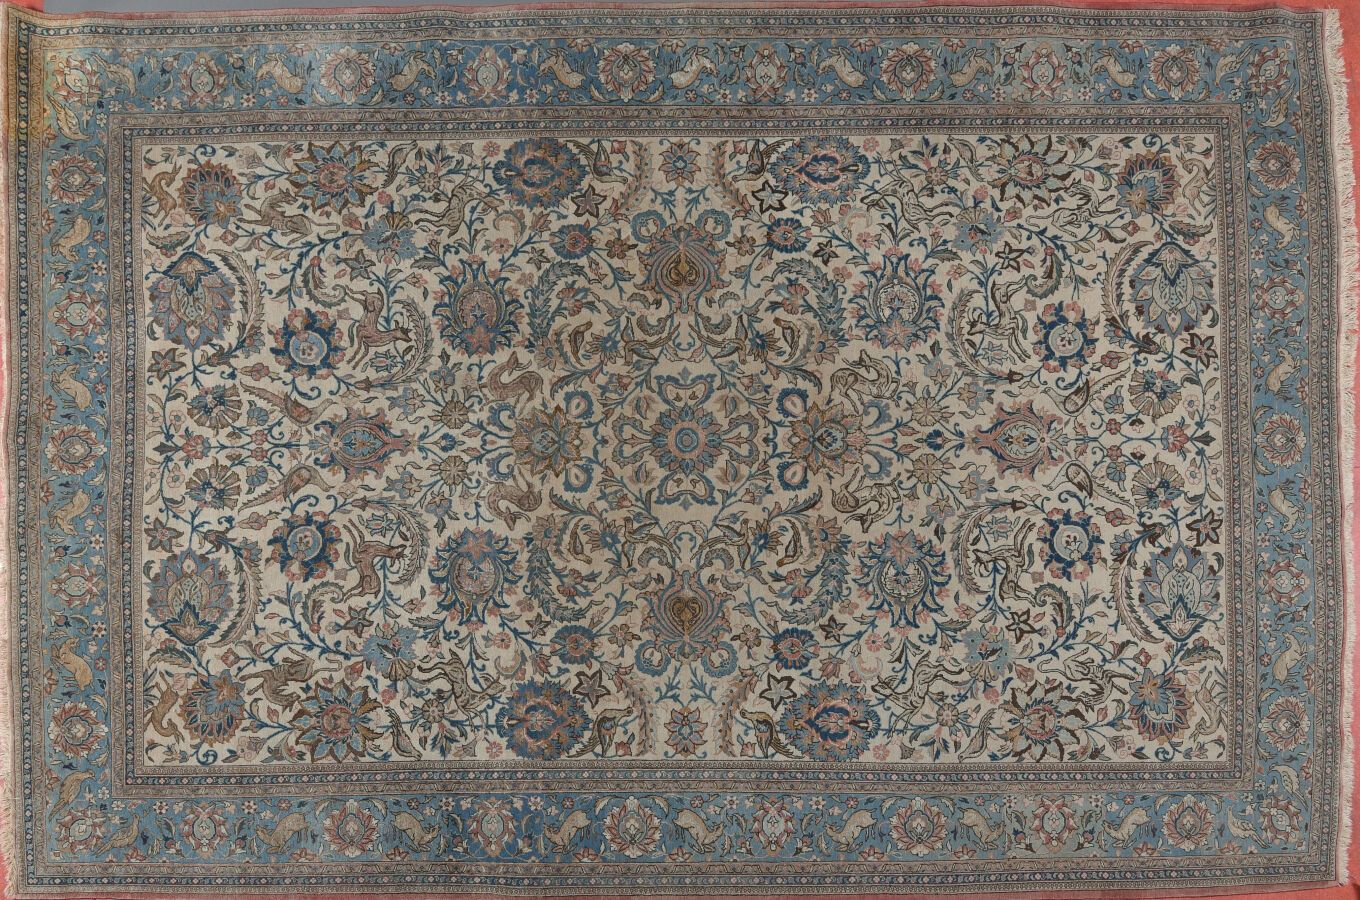 Null 波斯地毯GHOM
20世纪中期。 
棉质经线和纬线。 
羊毛和丝绒。 
良好的条件/年龄比。
233 x 357厘米
变色，一角有污点。